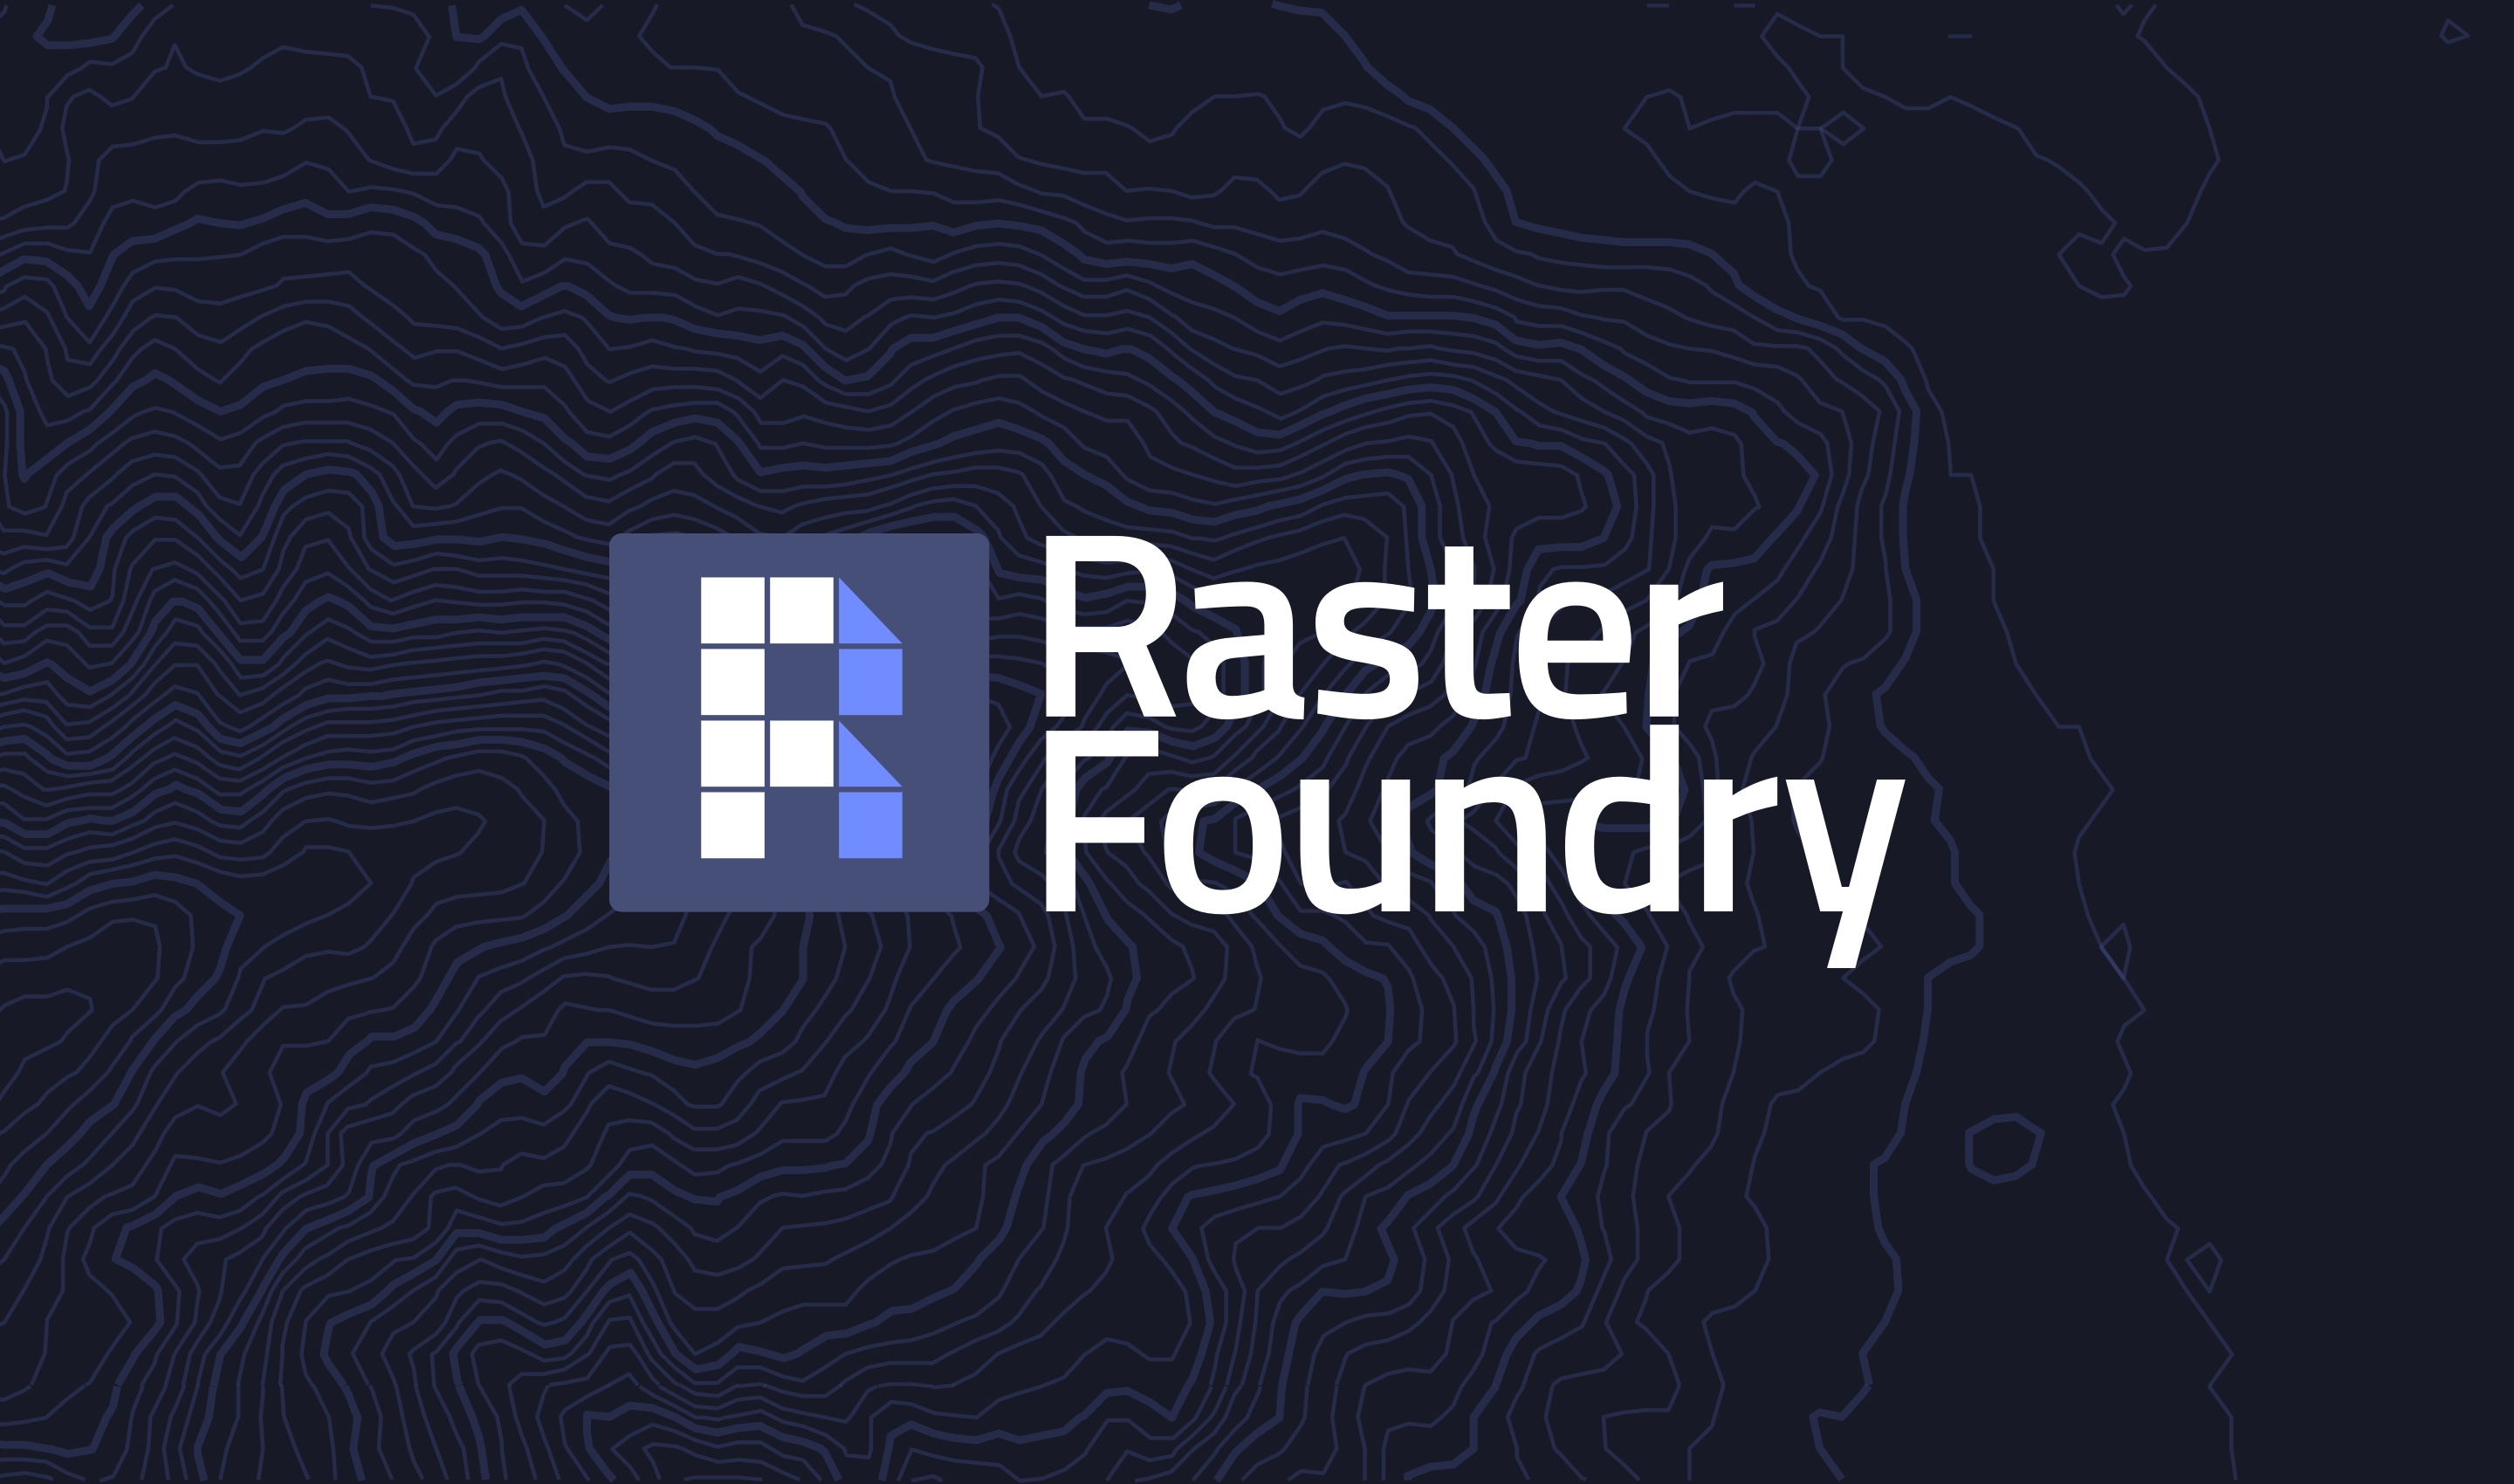 Raster Foundry branding